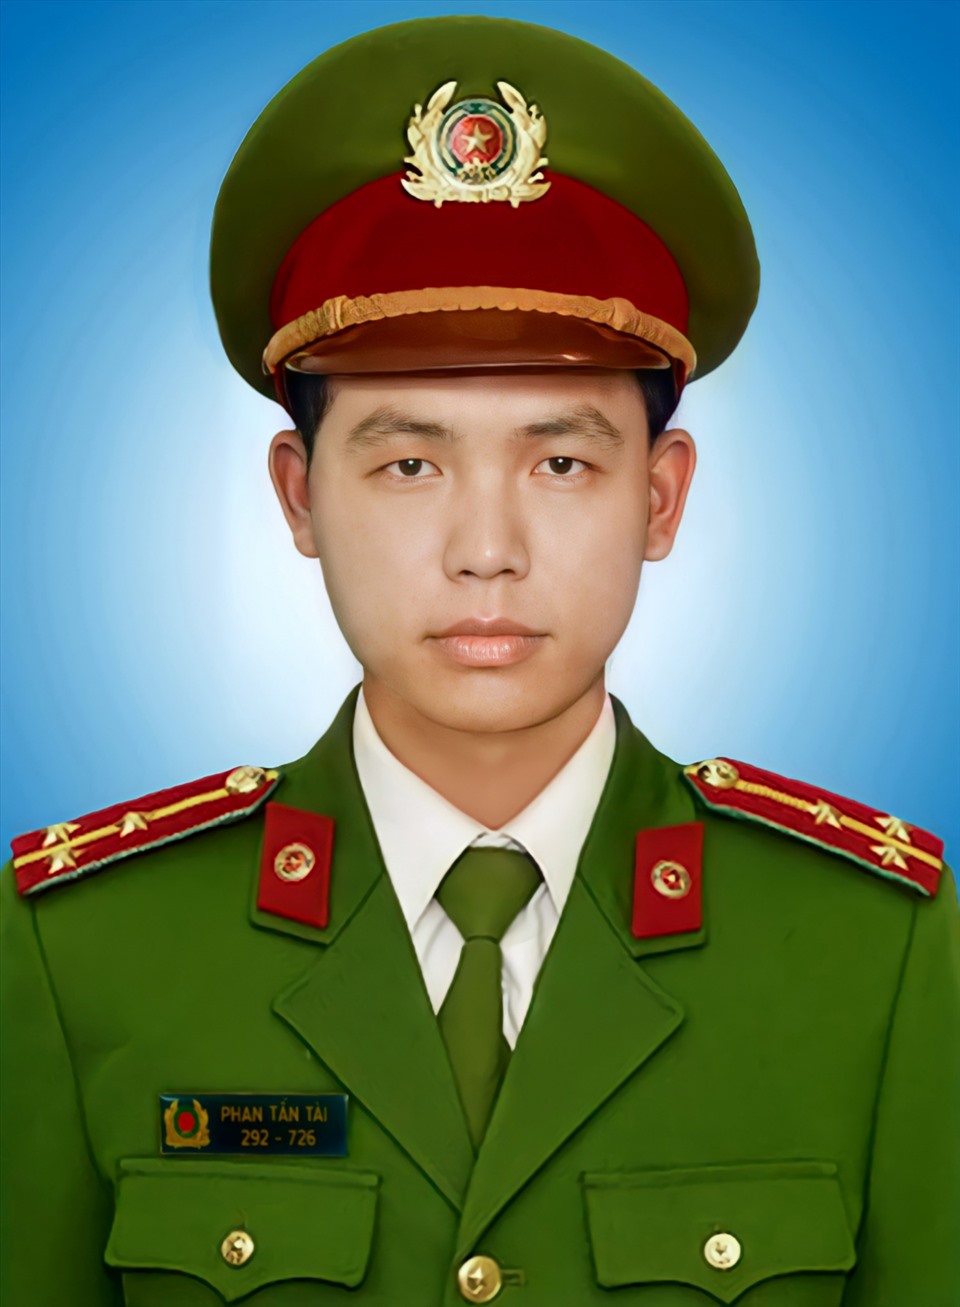 Thượng úy Phan Tấn Tài. Ảnh: VGP